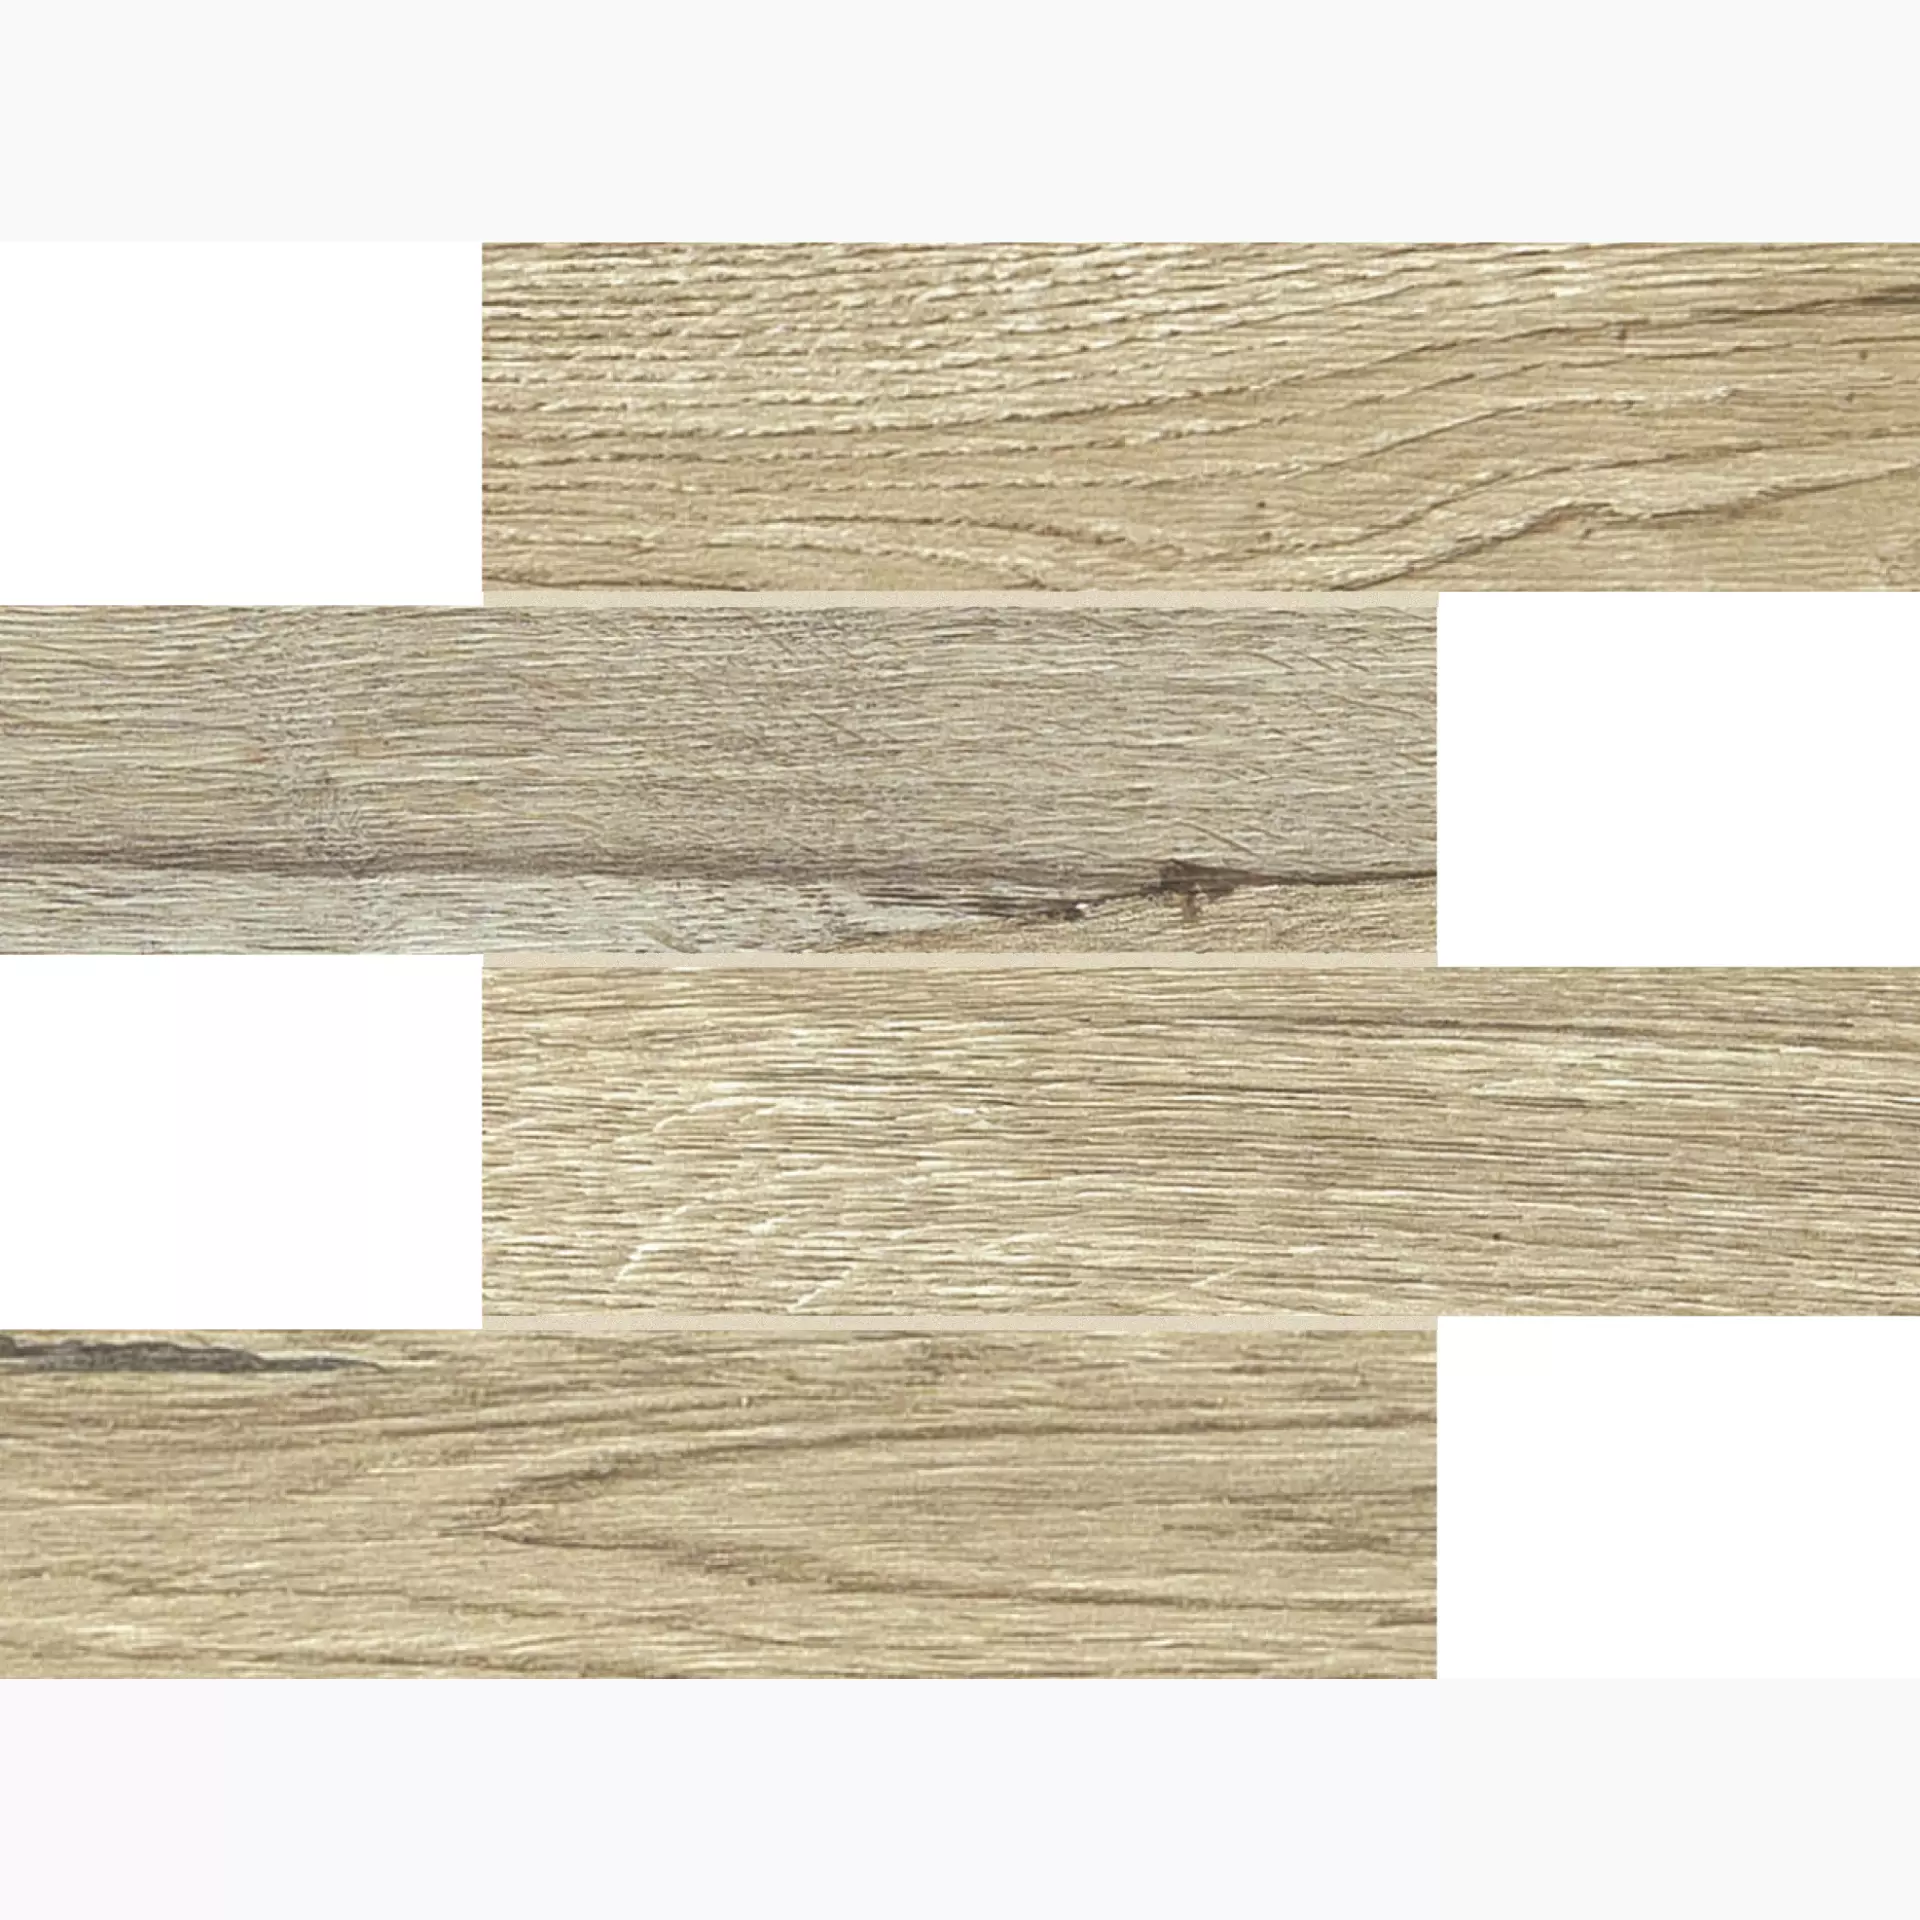 Florim Planches De Rex Miele Naturale – Matt Module Border 756078 30x30cm rectified 9mm